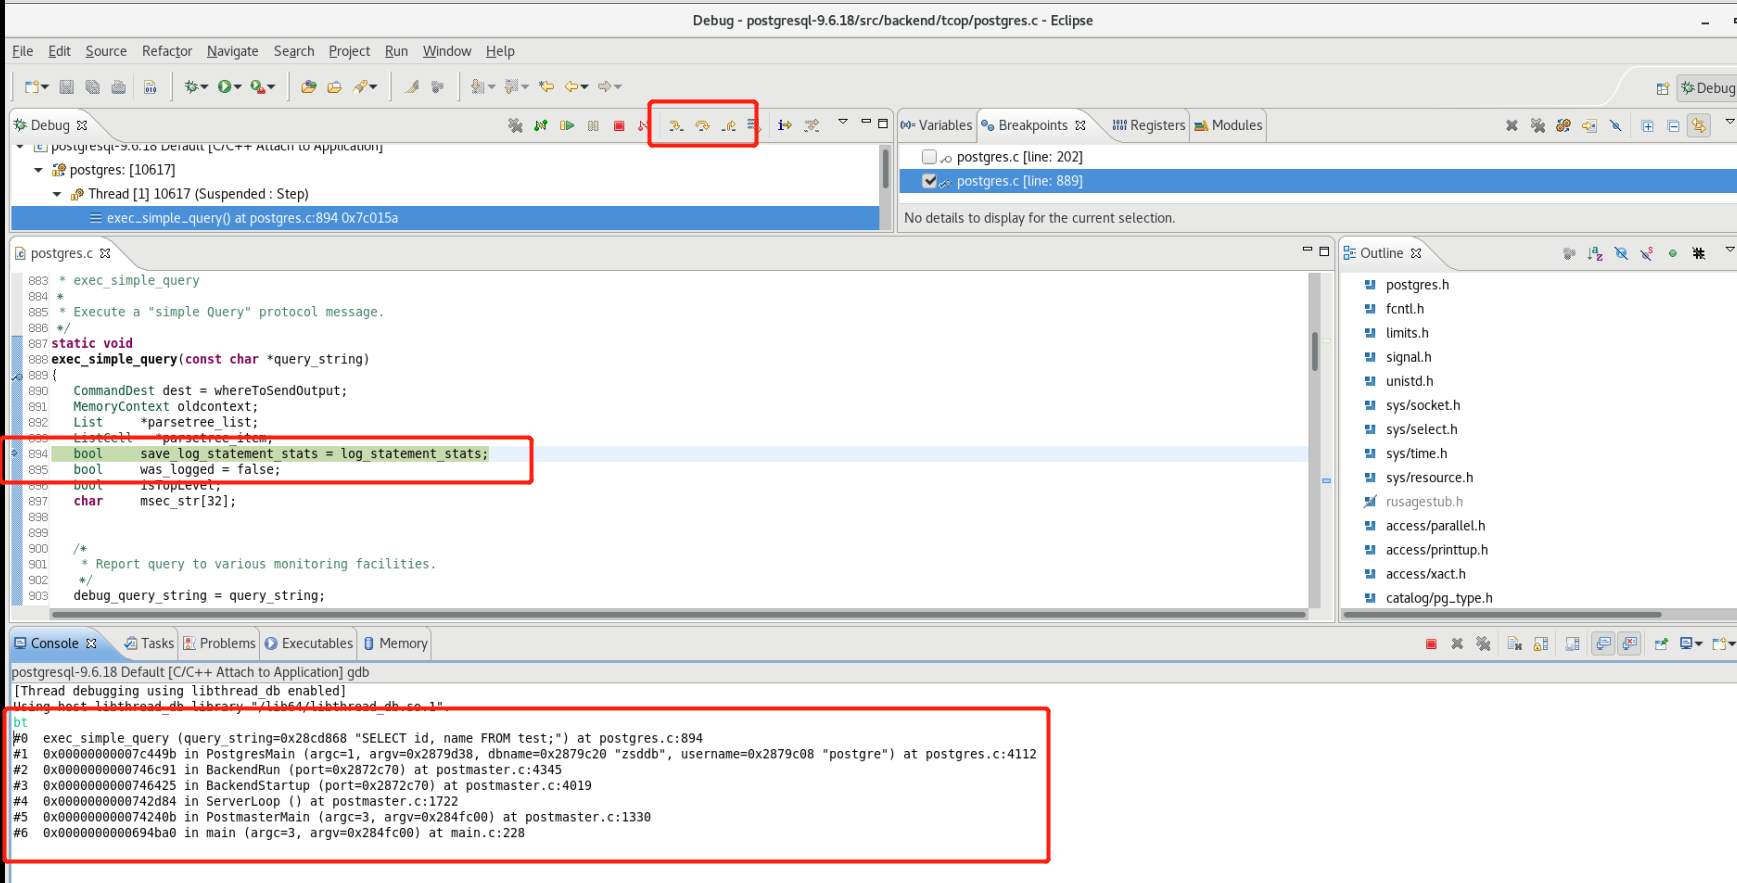 debug PostgreSQL 9.6.18 using Eclipse IDE on CentOS7